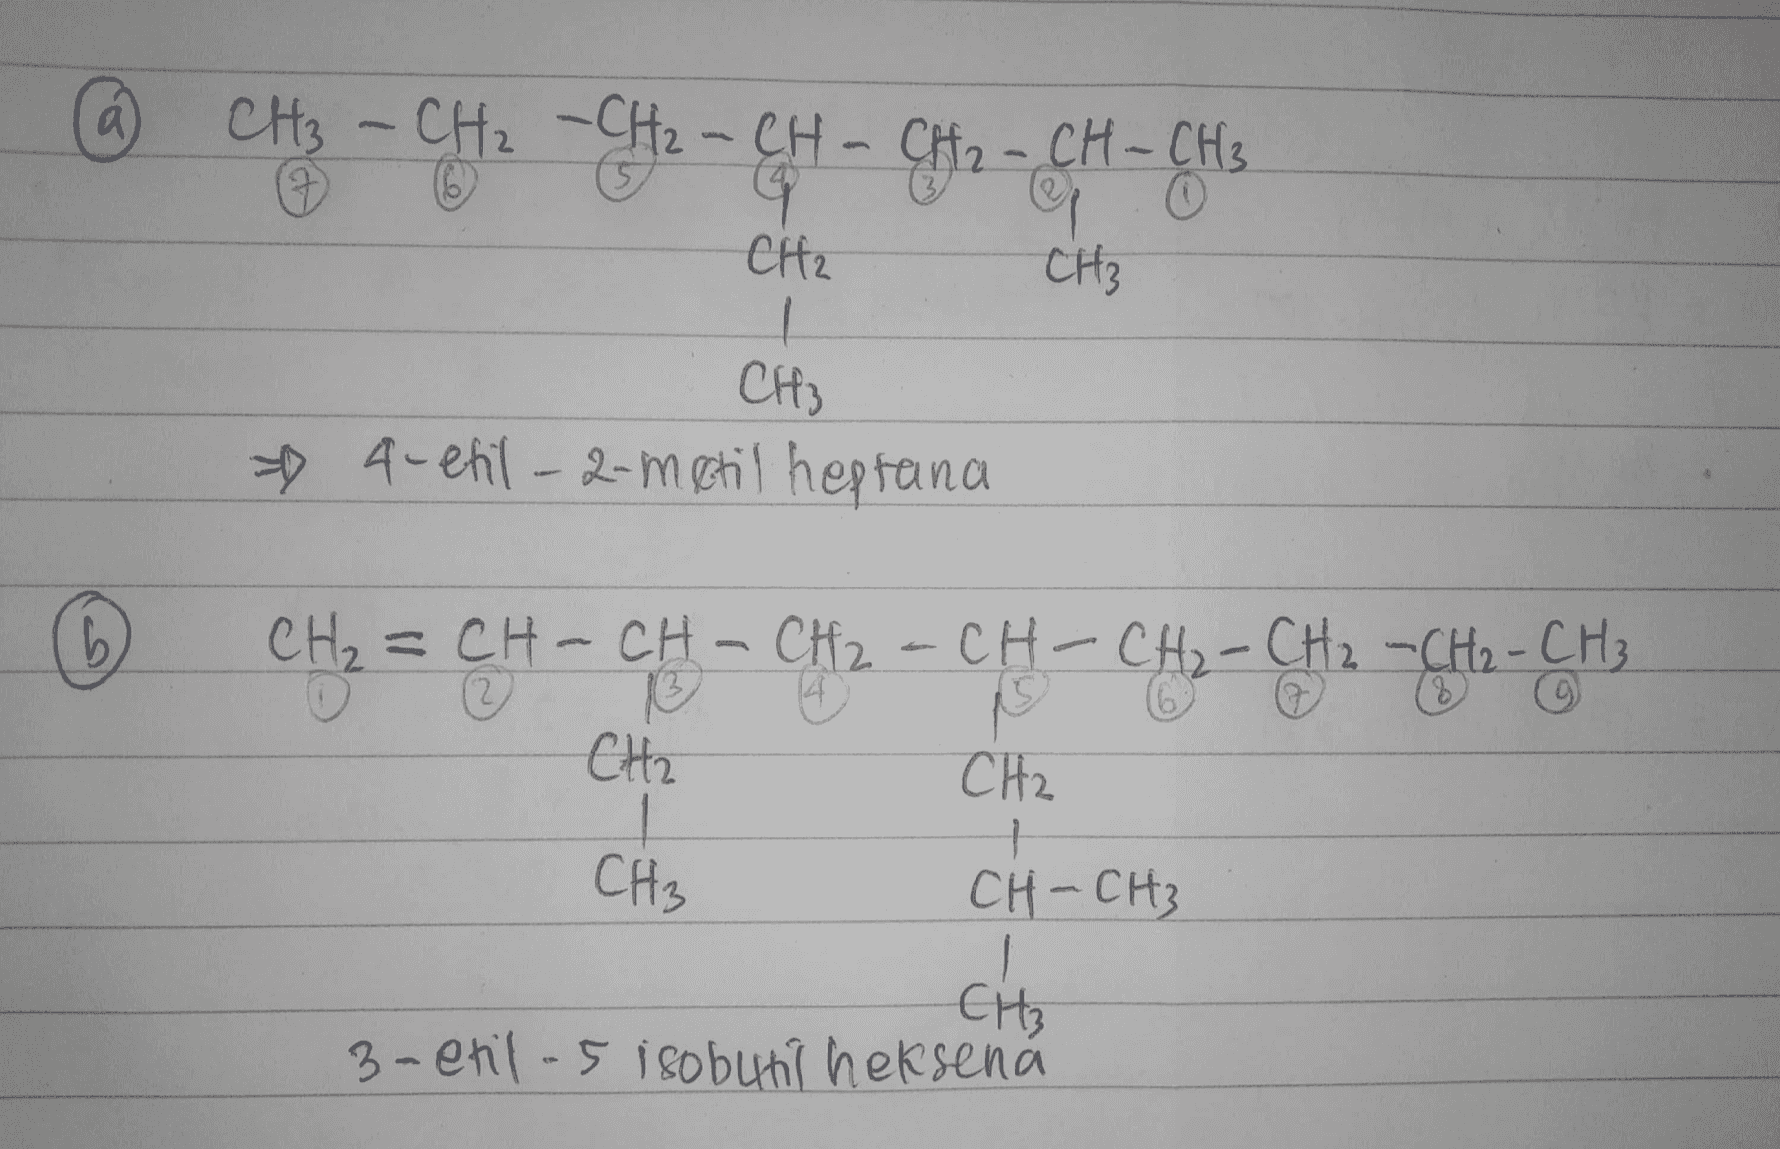 (4 CH3 - CH2 - CH2 - CH - CH2 - CH - CH3 G CH₂ CH3 CH3 4-etil-2-metil heptana CH₂=CH-CH-CH₂-CH-CH₂-CH ₂ -CH2-CH₃ 댑 CH2 CH₂ CH2 CH CH - CH₂ CH CH₃ , CH-CH3 CH₃ 3-etilos isobutil heksena 